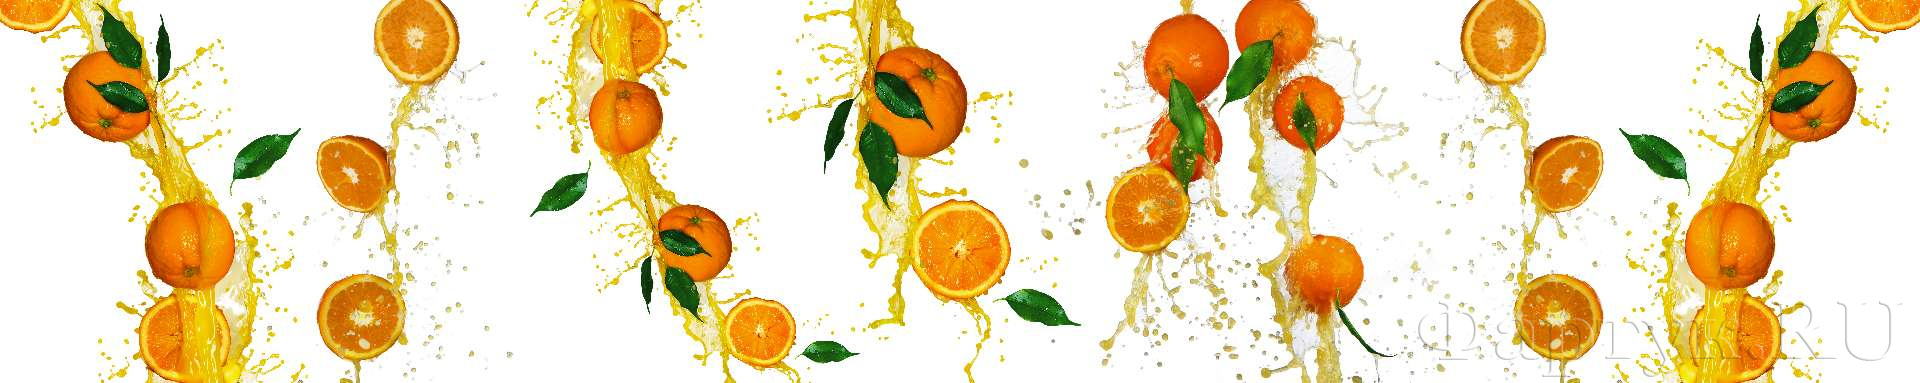 Апельсины, струи апельсинового сока